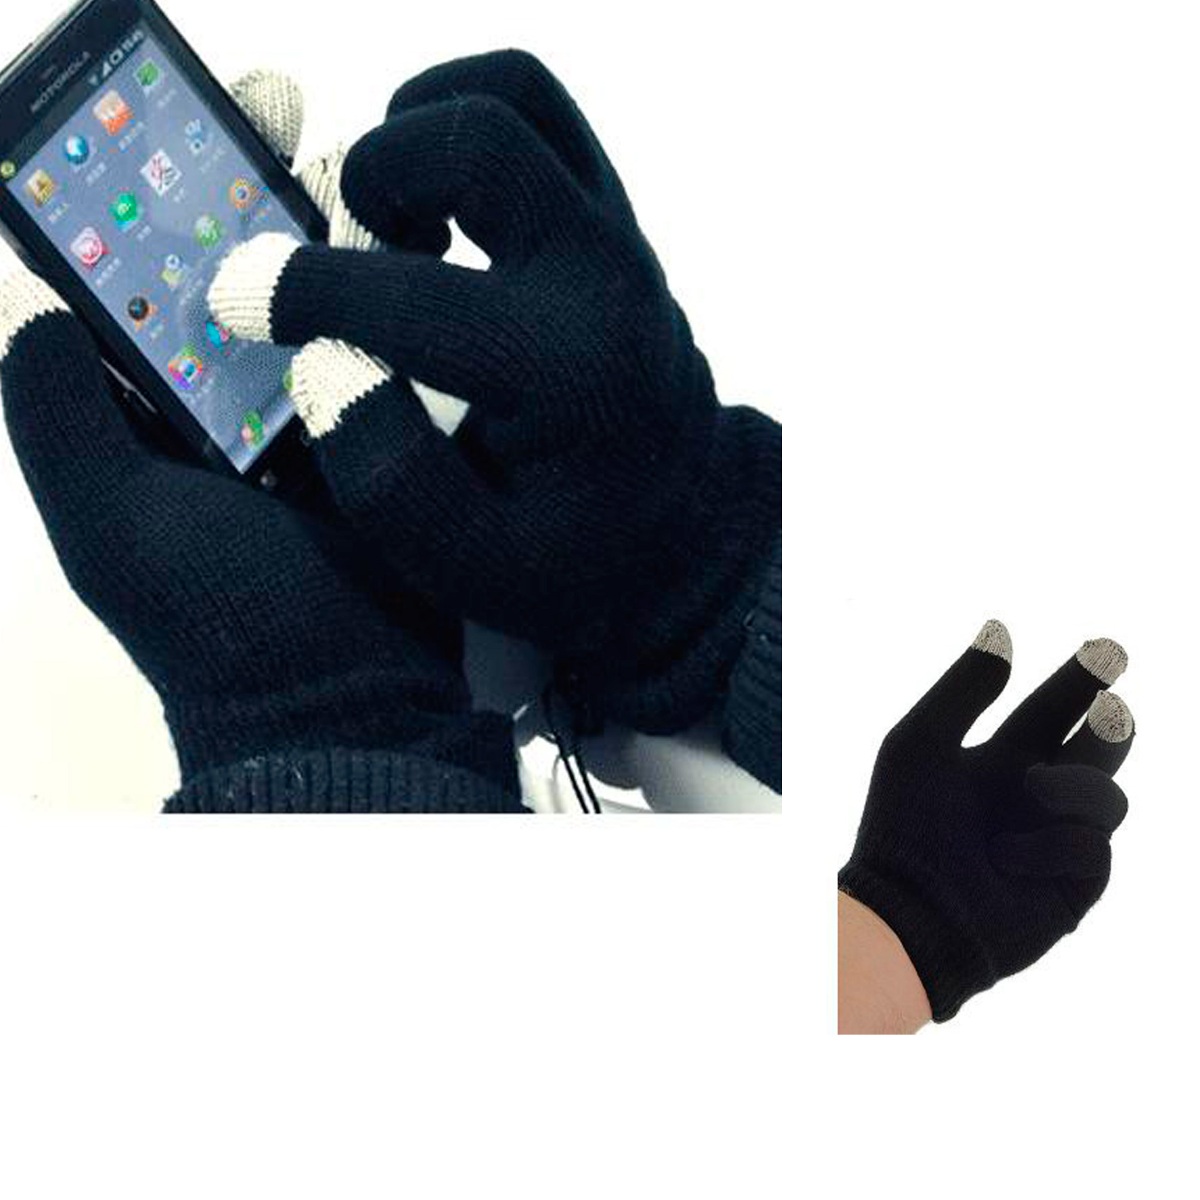 スマートフォン対応手袋 MST1126 ミトン 携帯 スマホ 寒さ対策 防寒グッズ グローブ ニット手袋 スマホ手袋